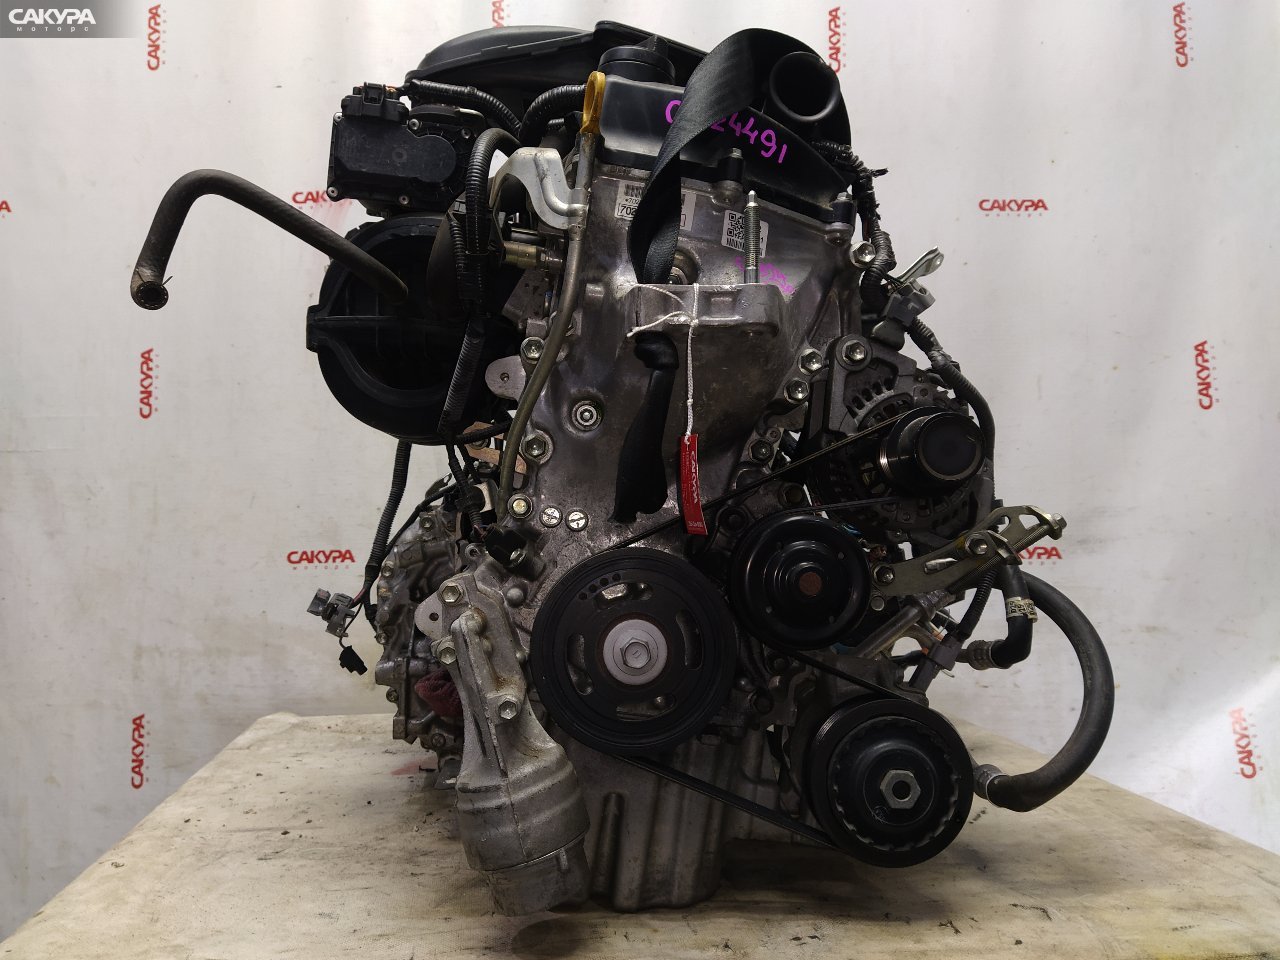 Двигатель Toyota Vitz KSP130 1KR-FE: купить в Сакура Красноярск.